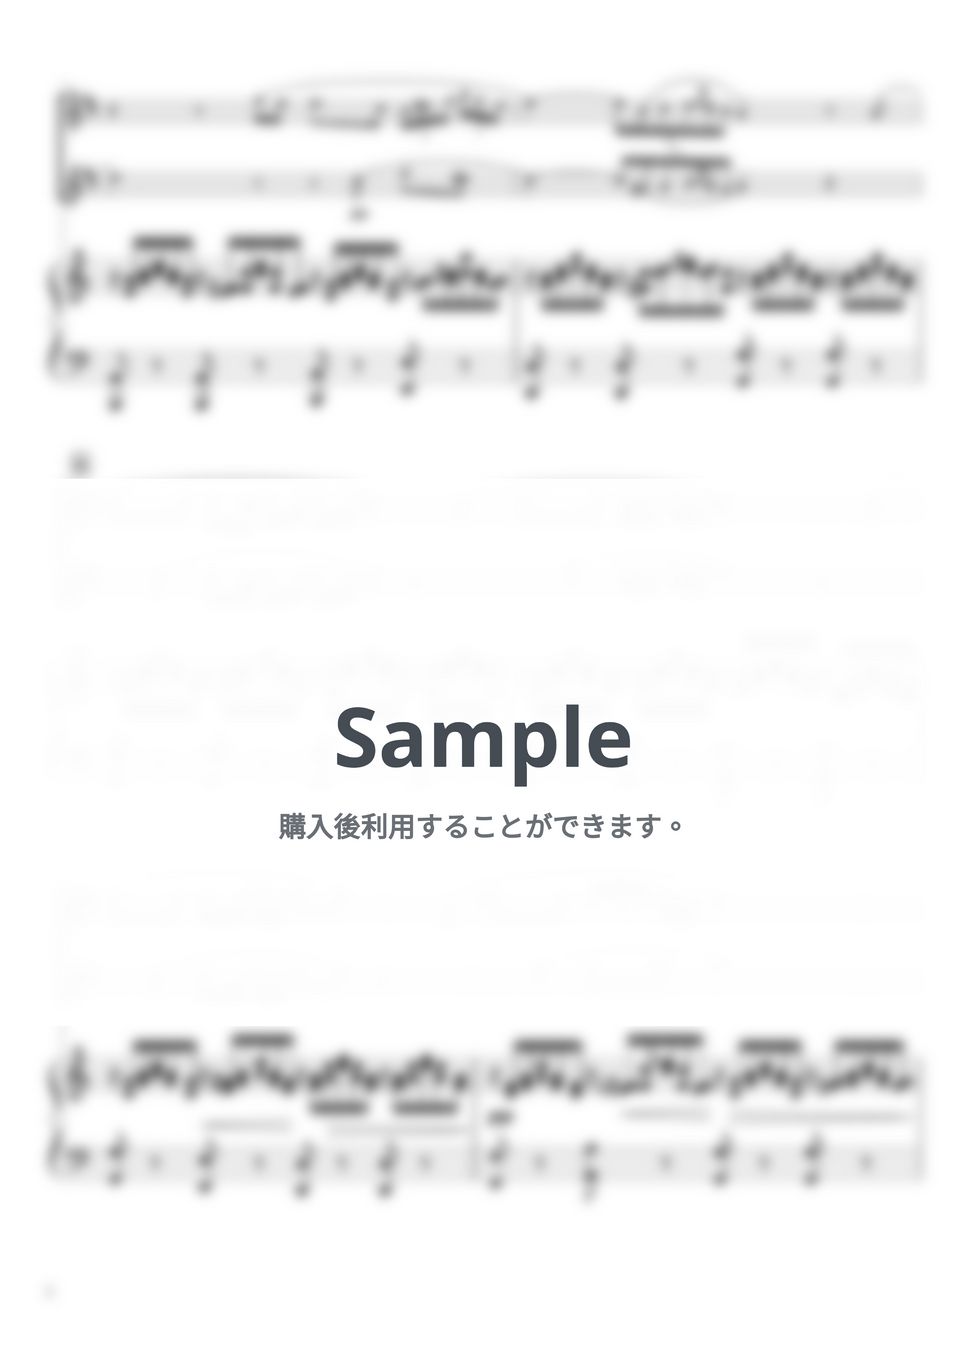 シューベルト - アヴェマリア (C・ピアノトリオ/ソプラノサックス二重奏) by pfkaori